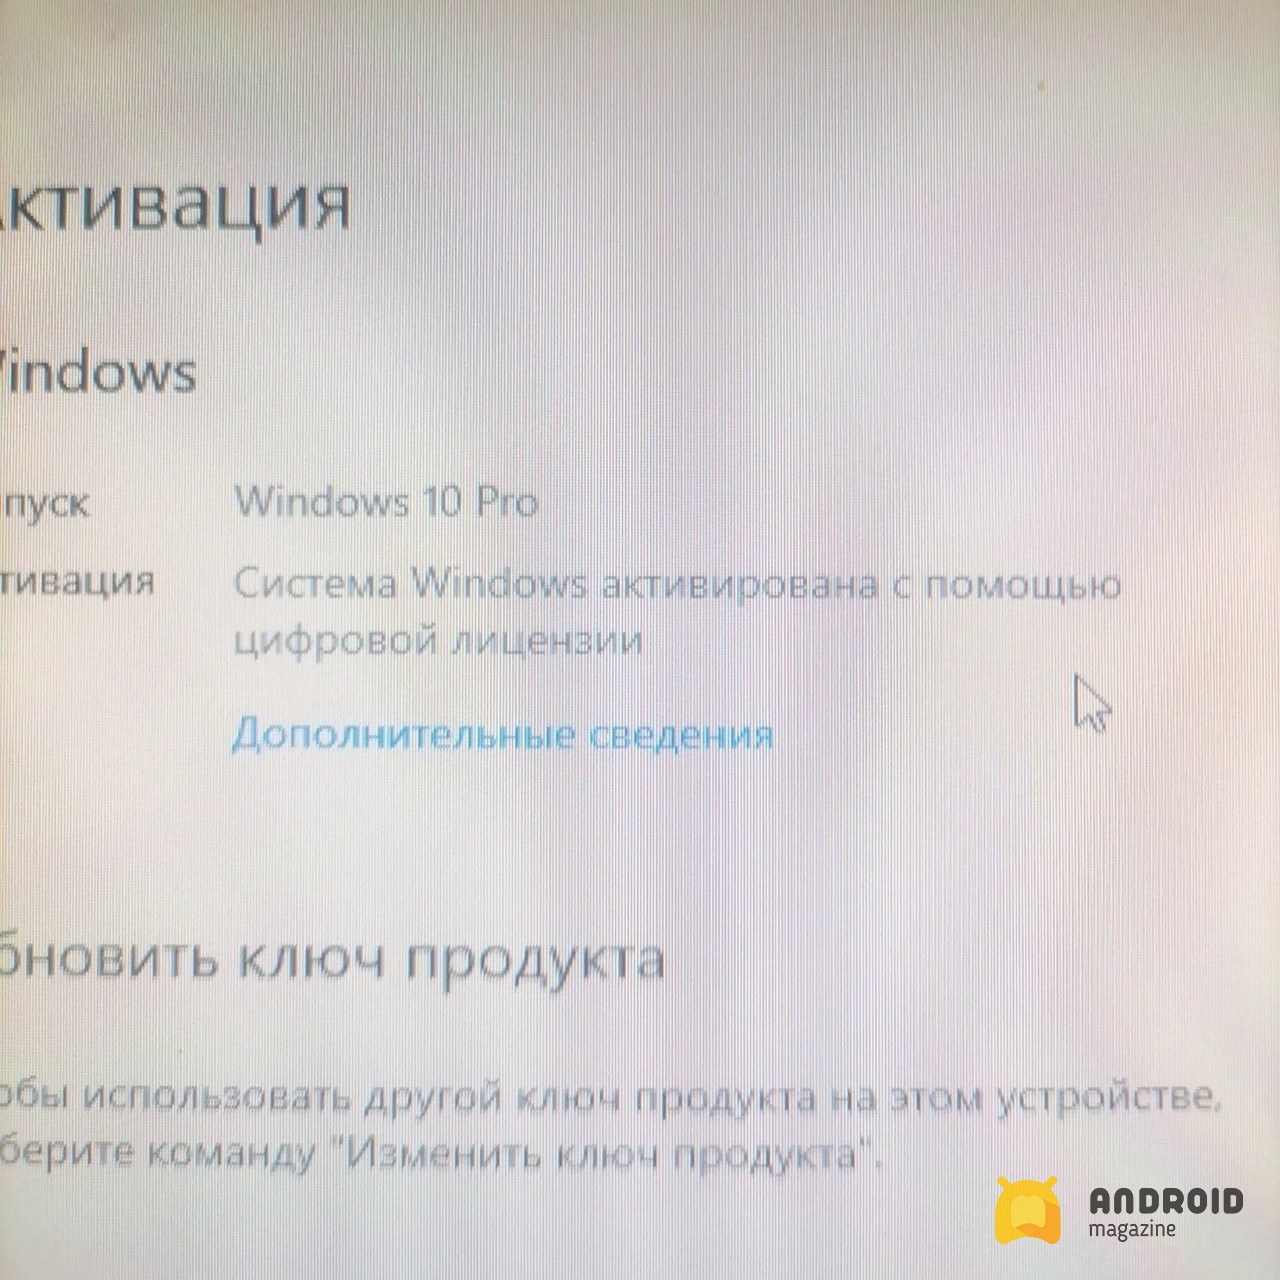 Лицензионный ключ Windows 10